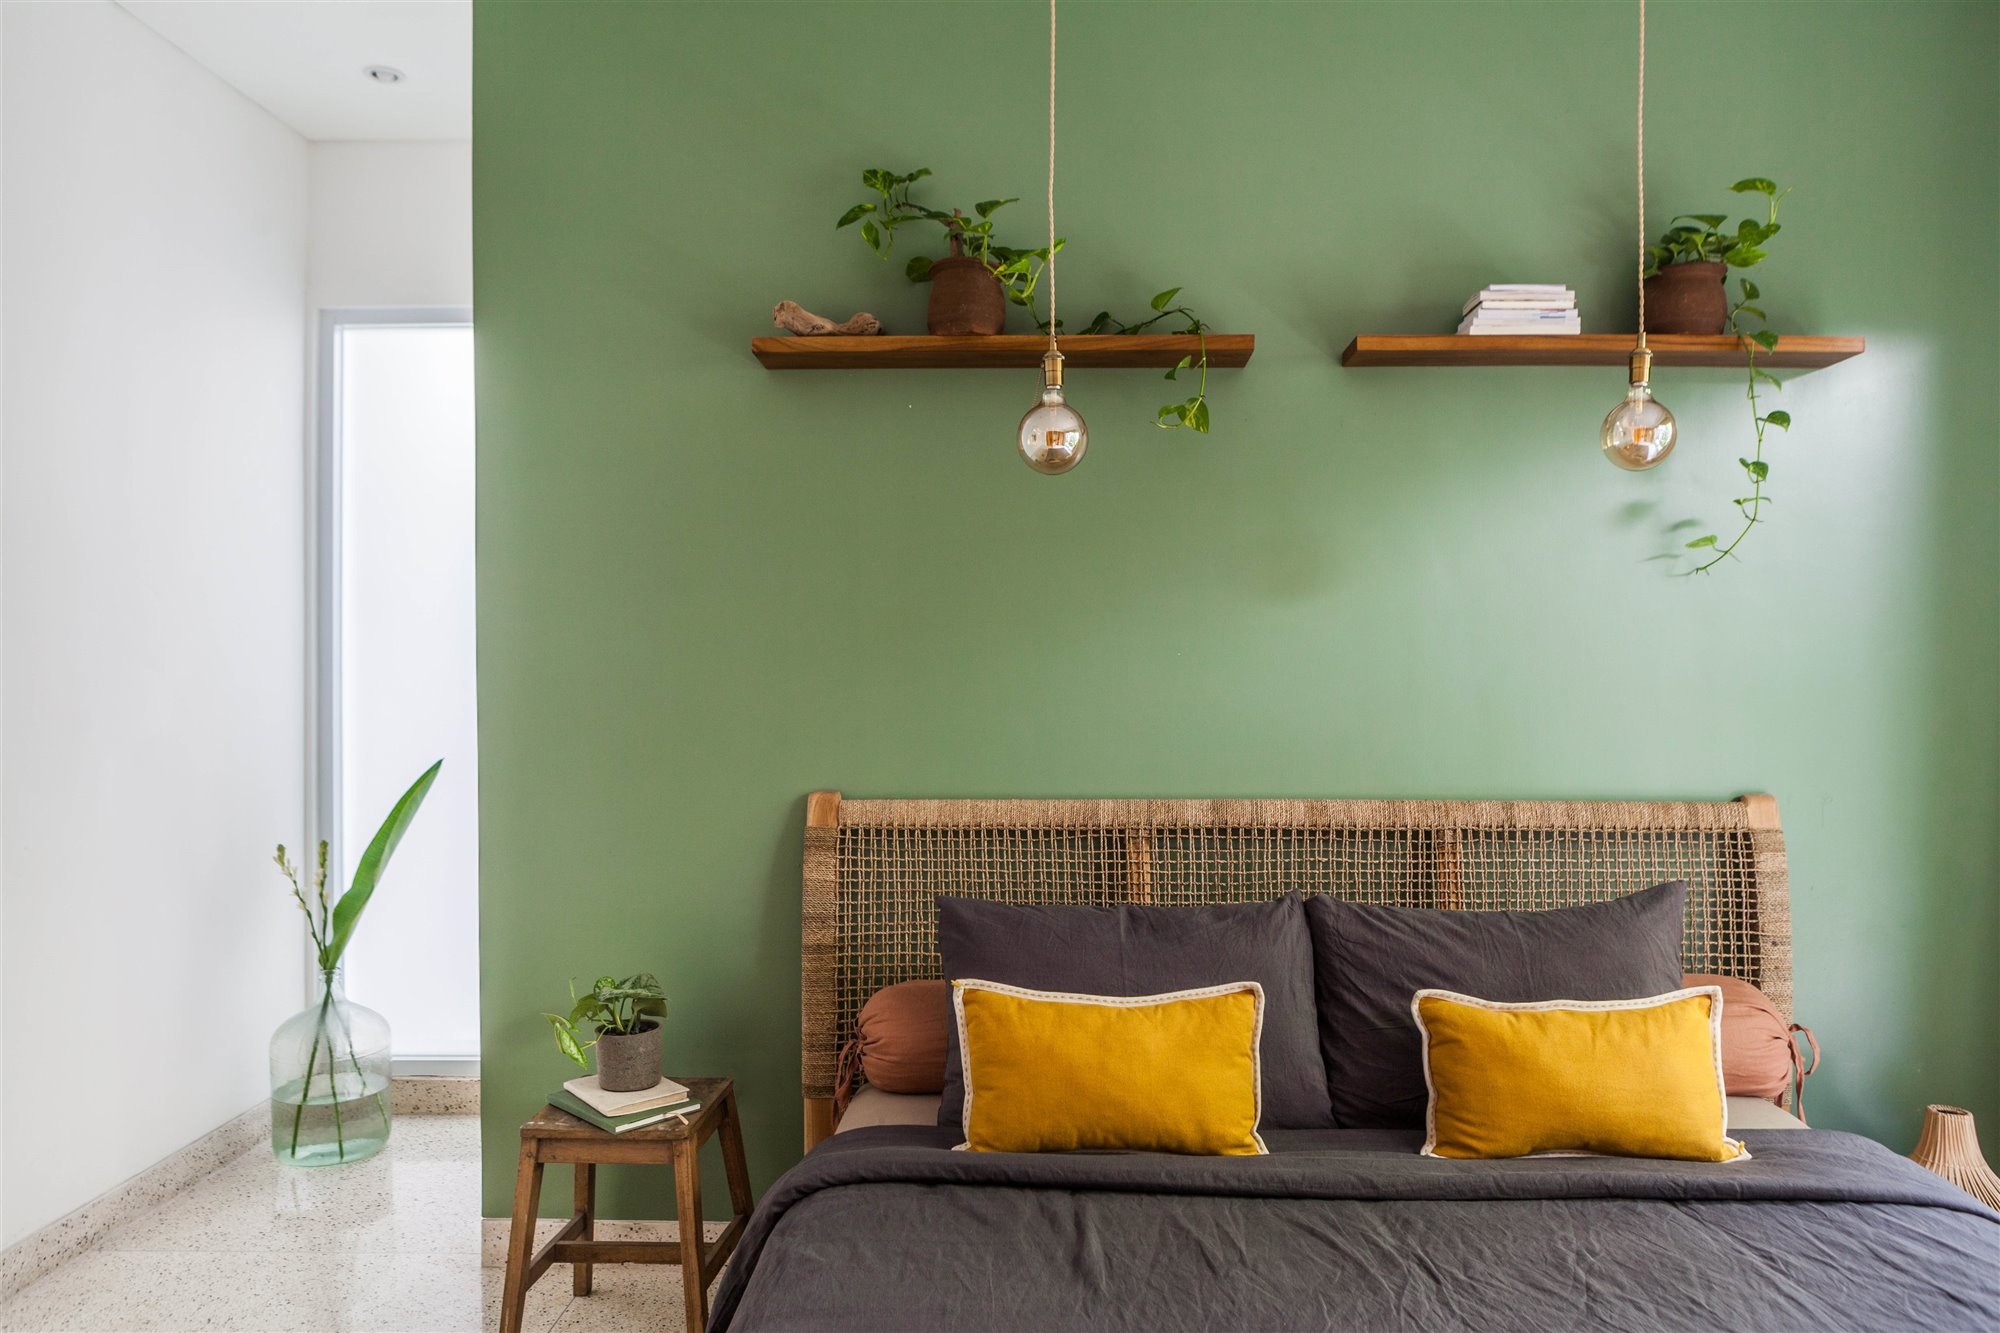 Dormitorio con pared verde y estantes en la pared del cabecero.